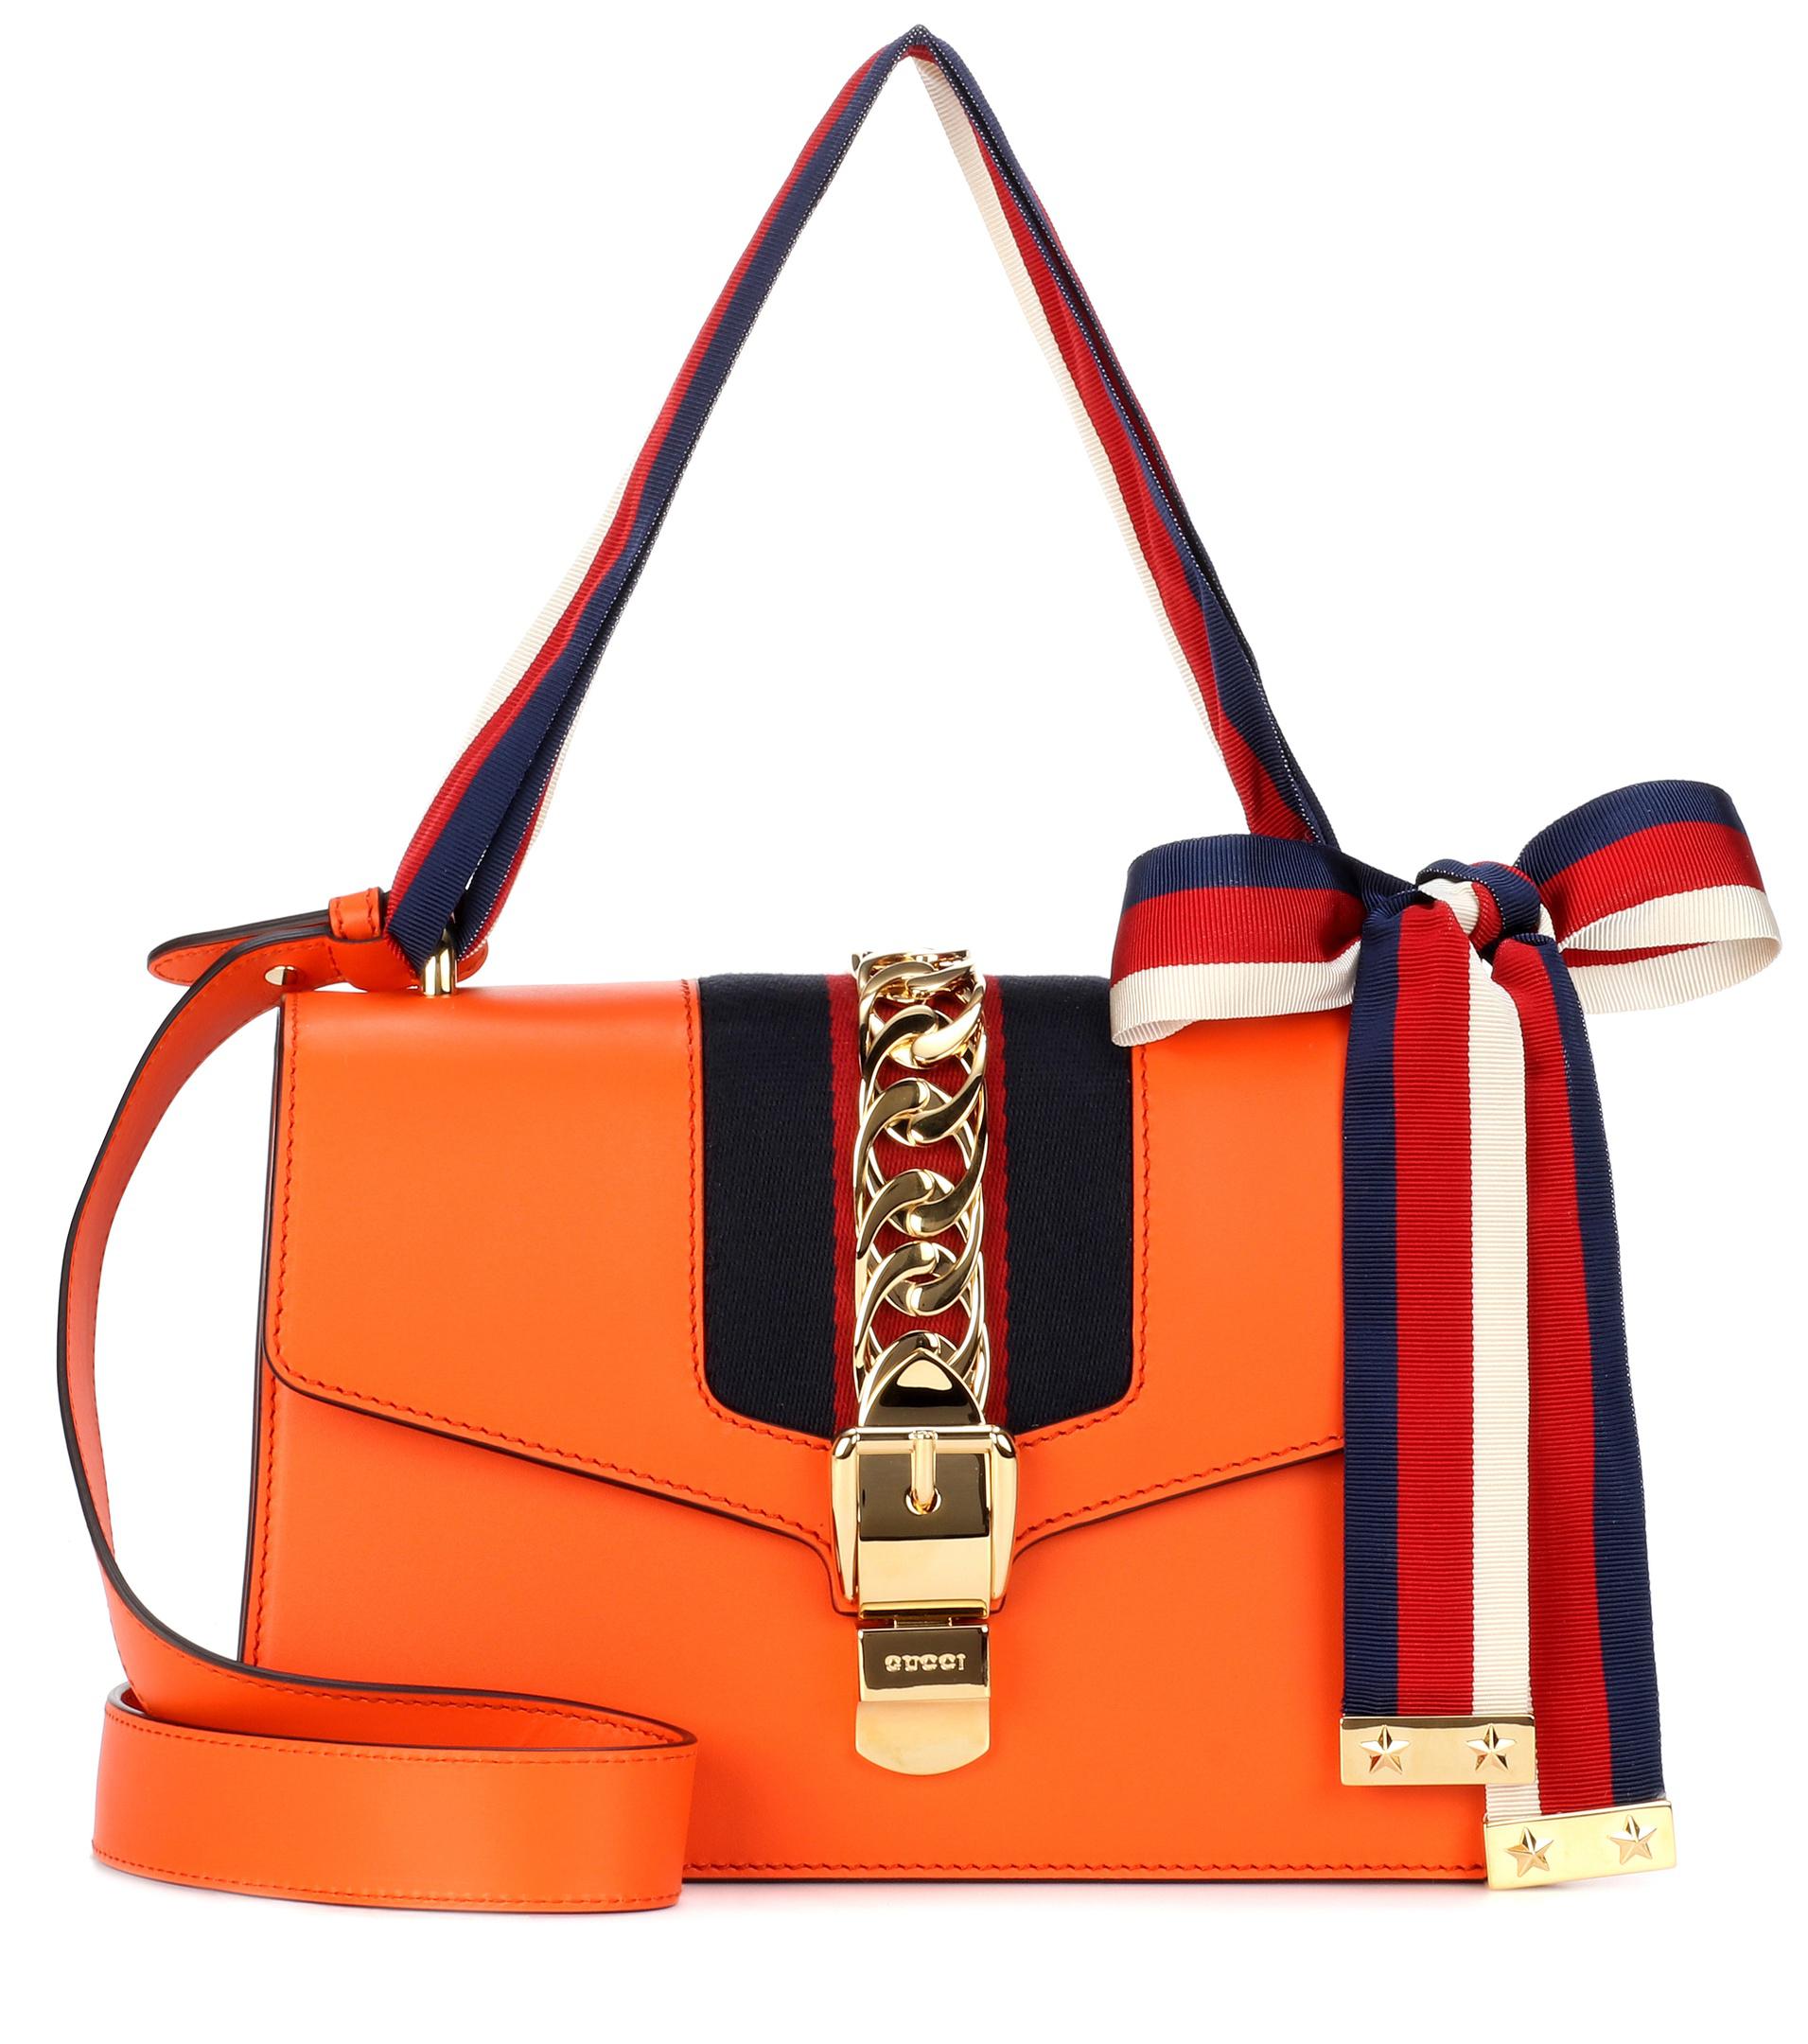 Lyst - Gucci Sylvie Leather Shoulder Bag in Orange